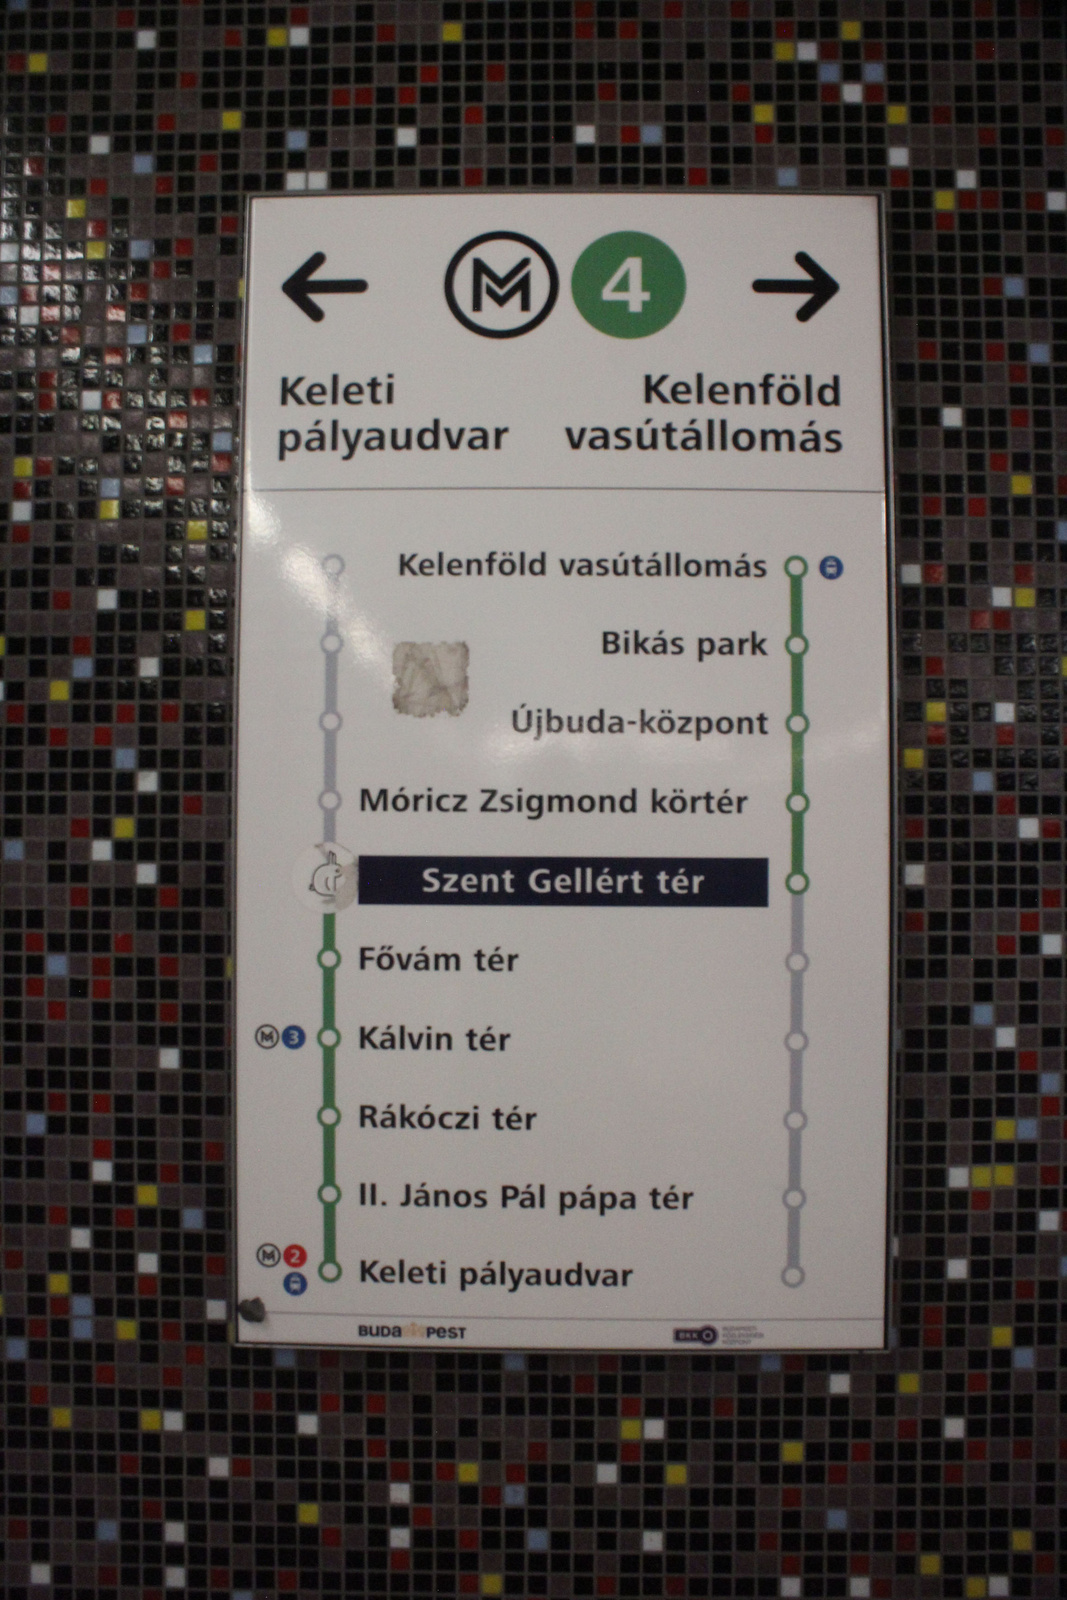 Metro4-GellertTer-20150716-09